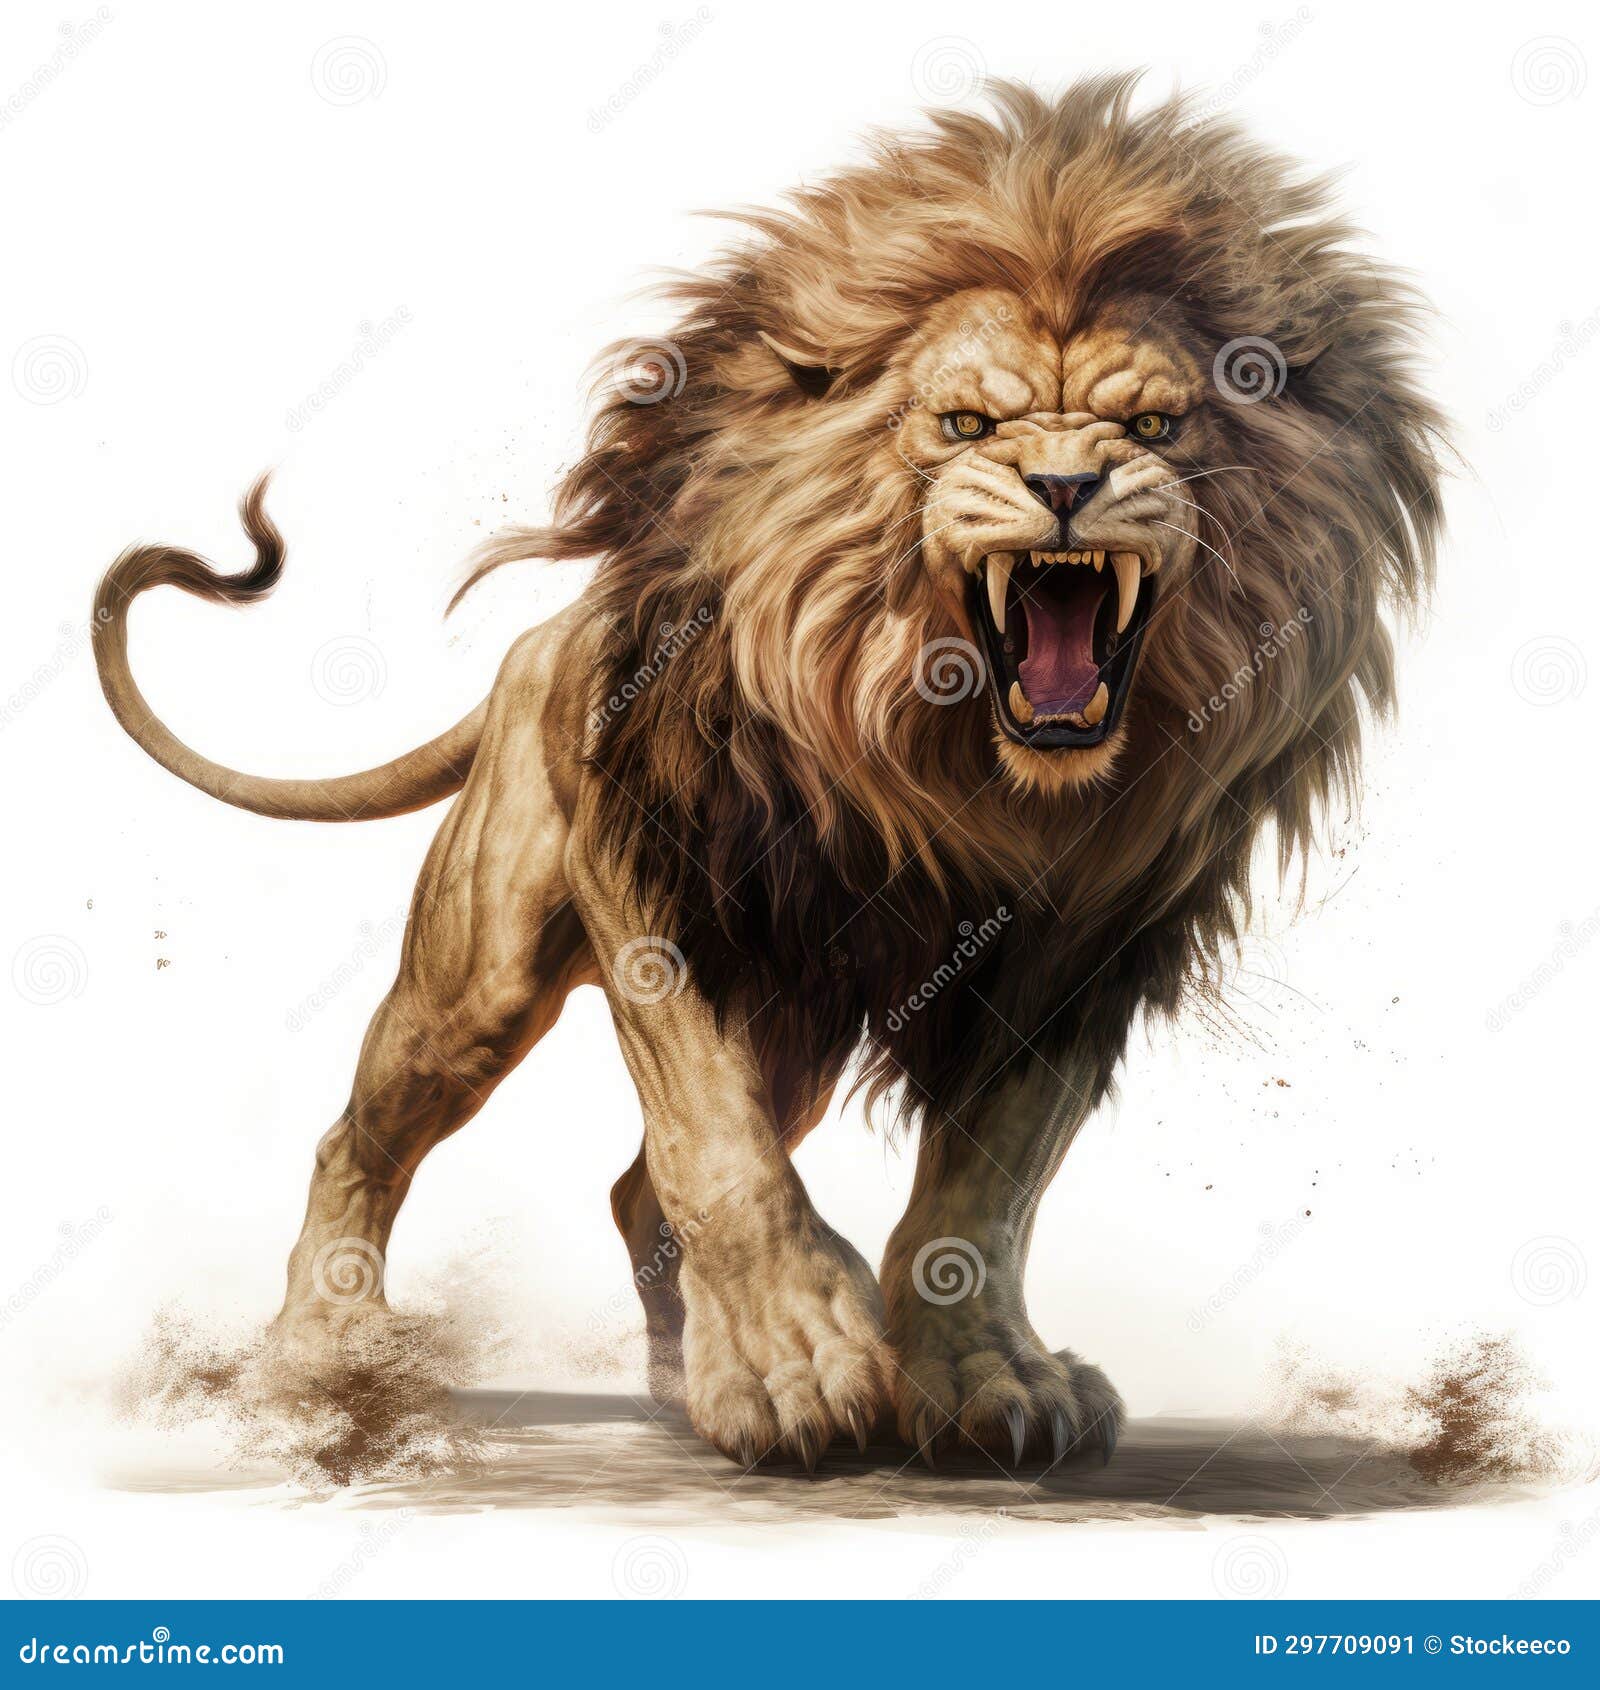 monster lion roaring on white background